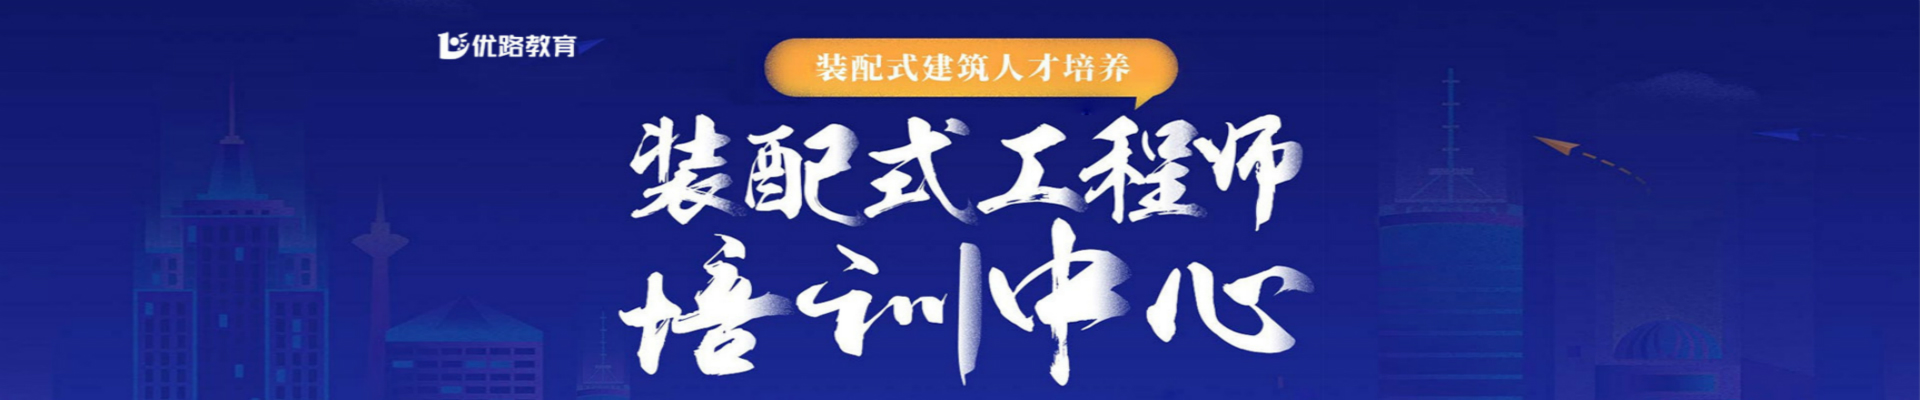 广东珠海优路教育培训学校